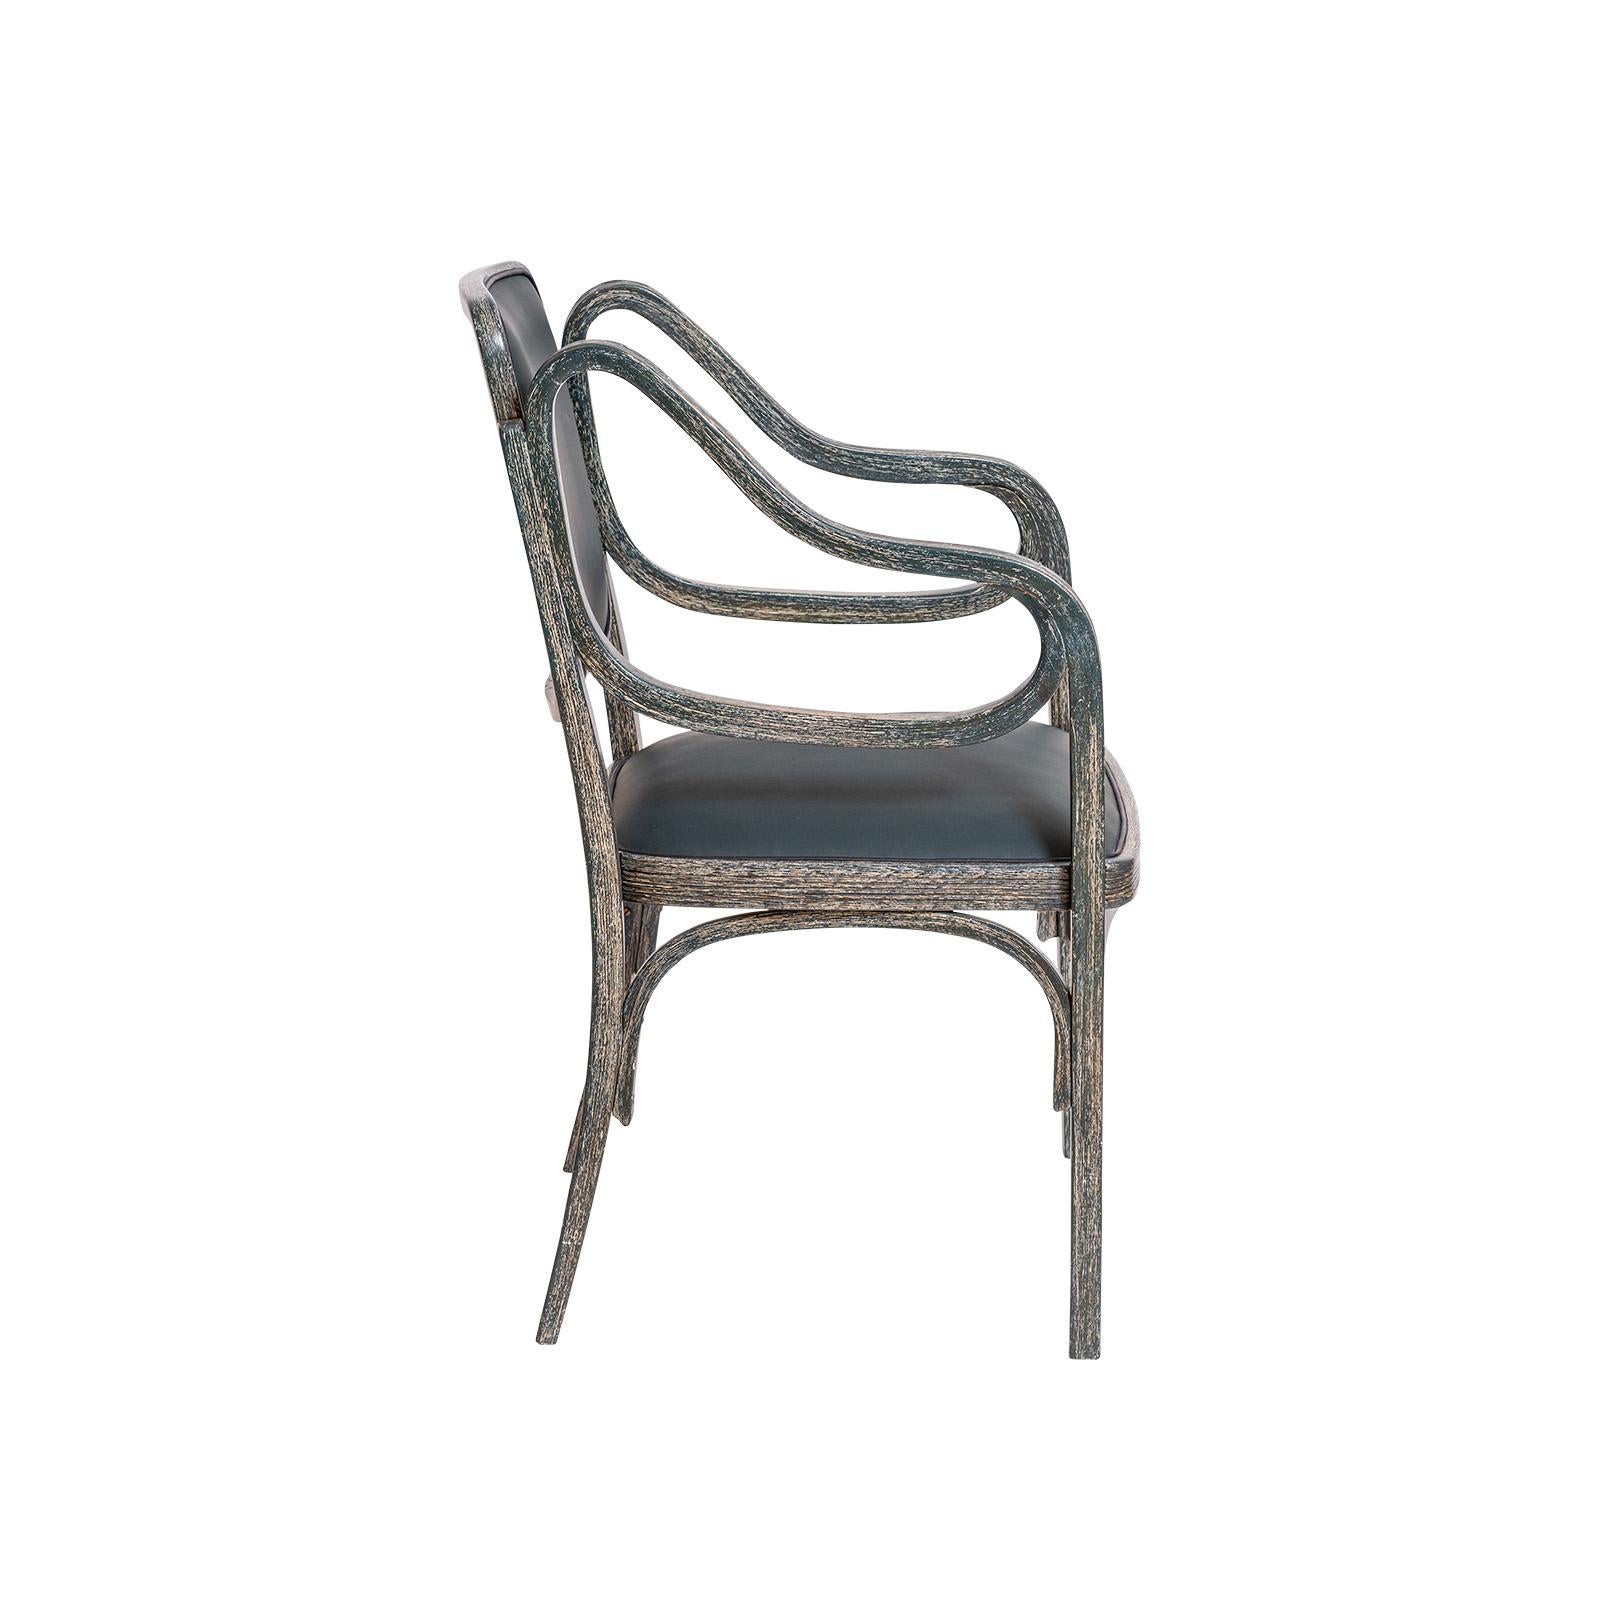 Als Pionier und Meister der Moderne nutzte Otto Wagner die damals recht neue Technik des Holzbiegens für seine Möbelentwürfe.
Der Entwurf für diesen Sessel stammt aus dem Jahr 1901. Dieser Stuhl wurde um 1906 bei Mundus hergestellt. Besonders das